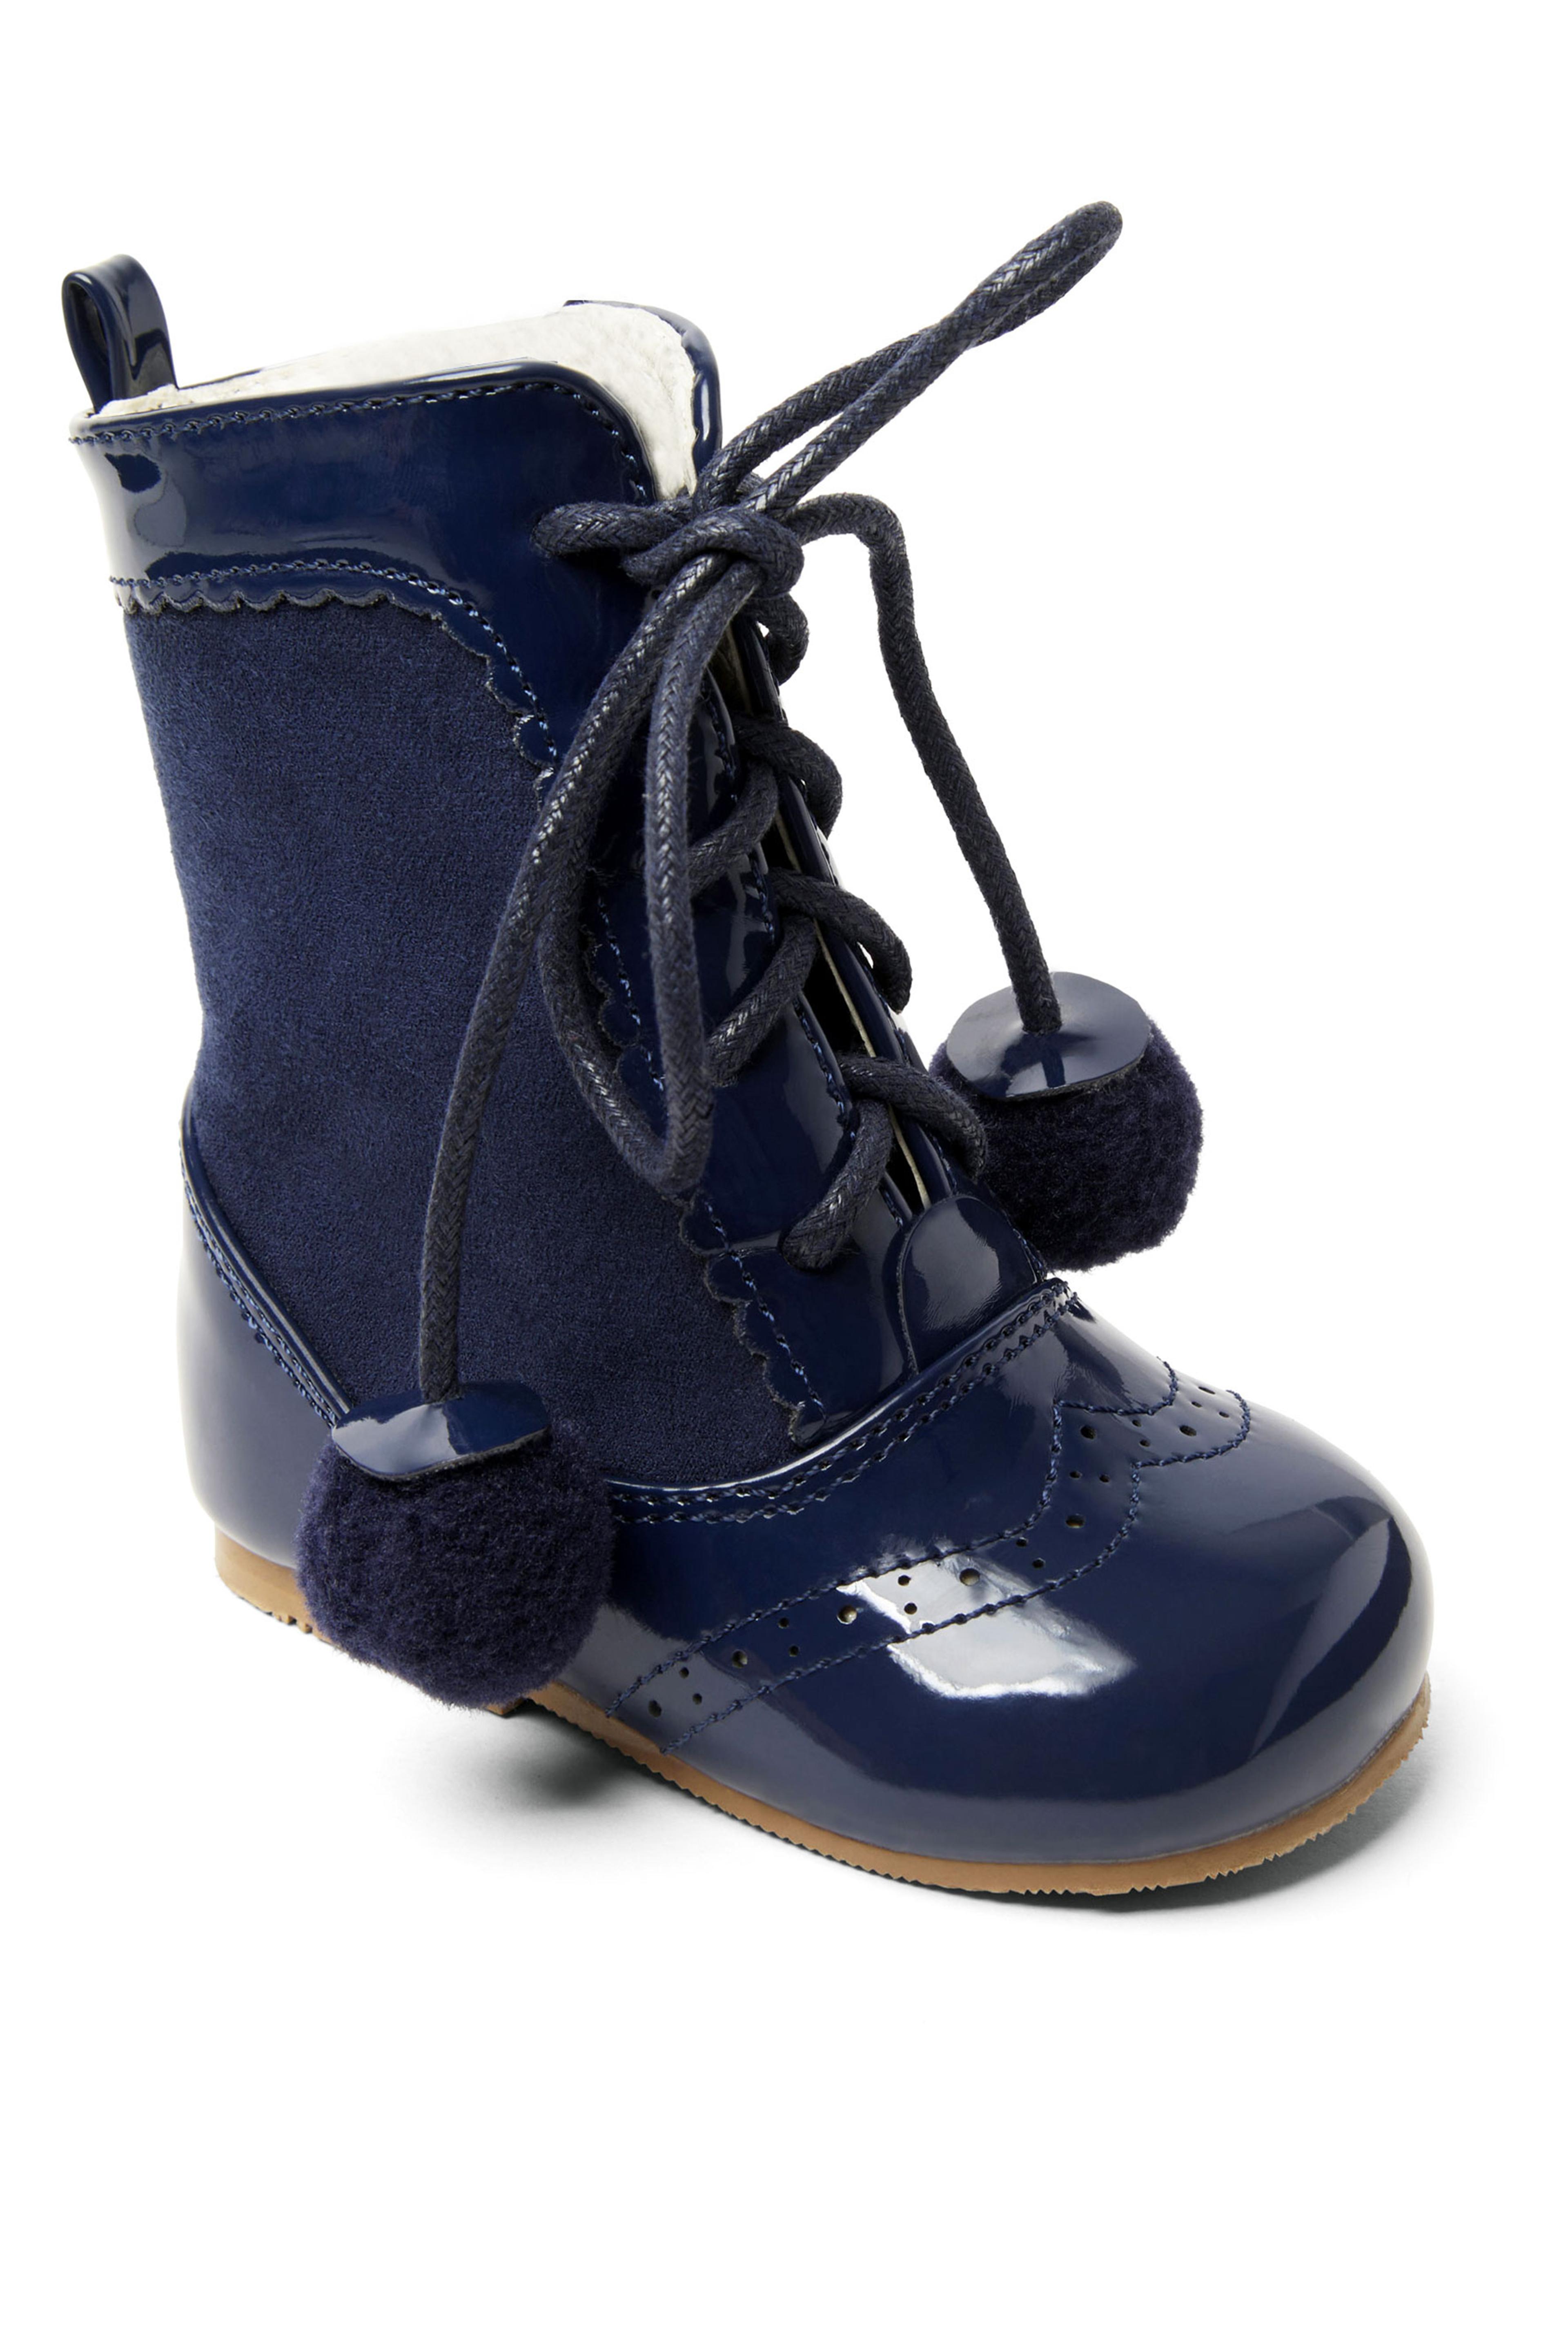 Kinder Lackleder Sienna Brogue Stiefel mit Schnürung und Pom-Pom Details, Unisex Klassische Schuhe - Navy blau